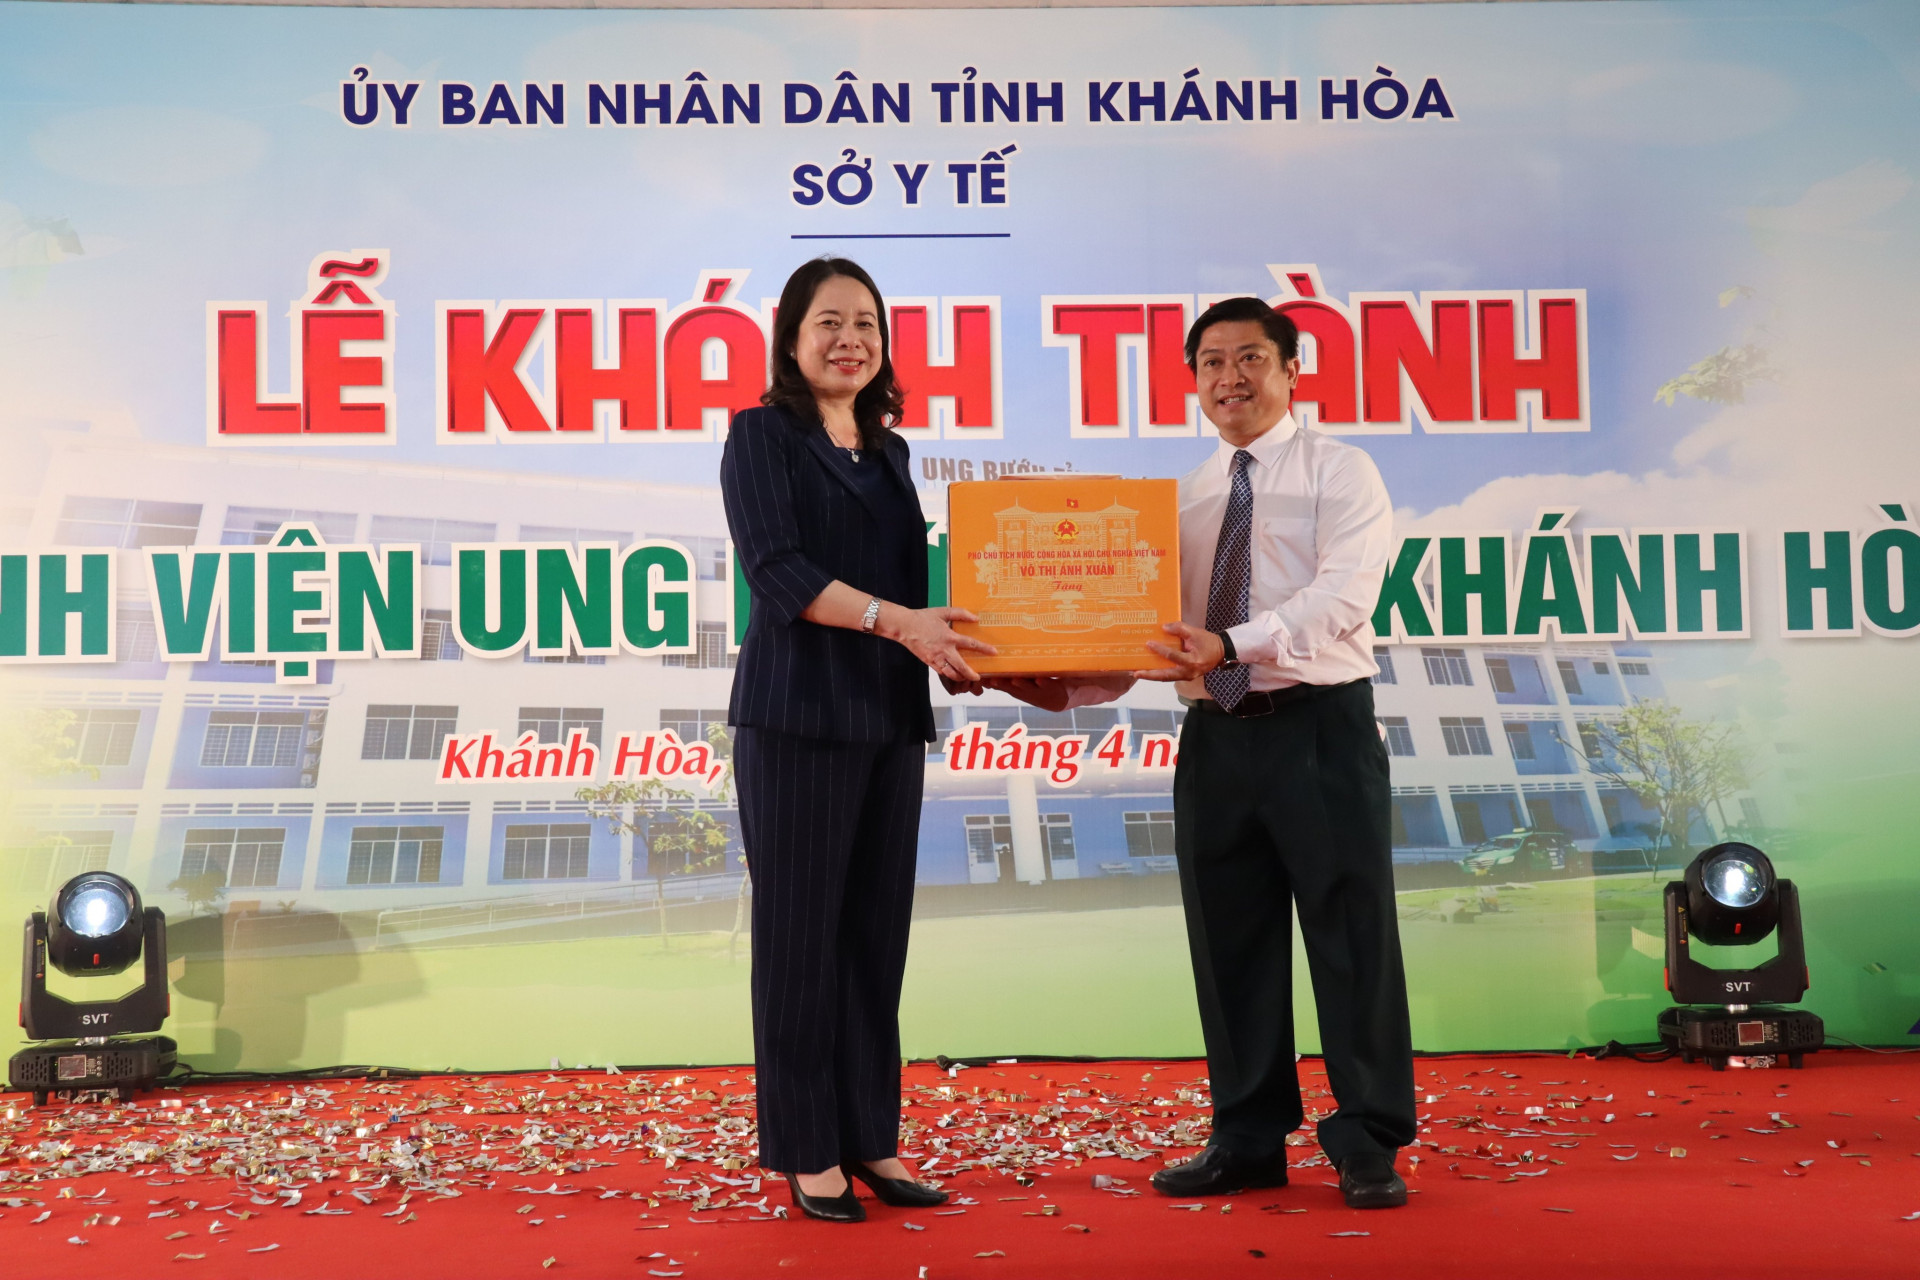 Phó Chủ tịch nước Võ Thị Ánh Xuân tặng quà cho Bệnh viên Ung bướu tỉnh Khánh Hòa.